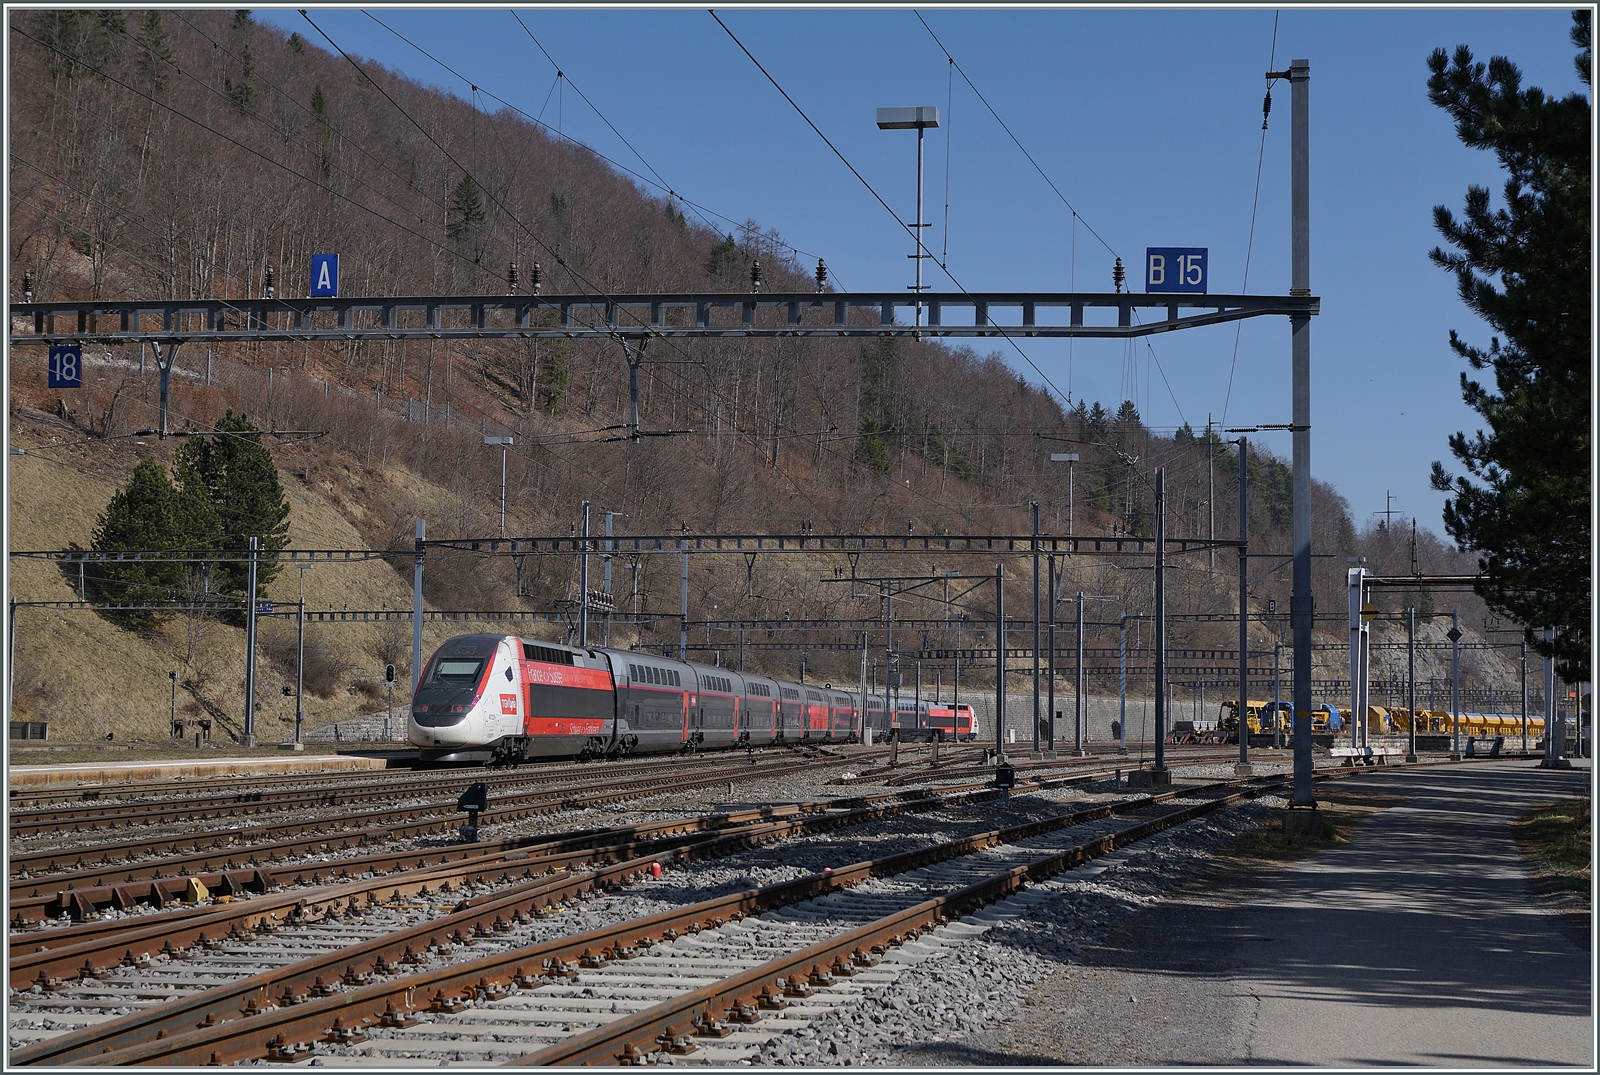 Der TGV Lyria 4722 von Paris nach Lausanne verlässt nach einem kurzen Halt Vallorbe in Richtung Lausanne. 

24. März 2022